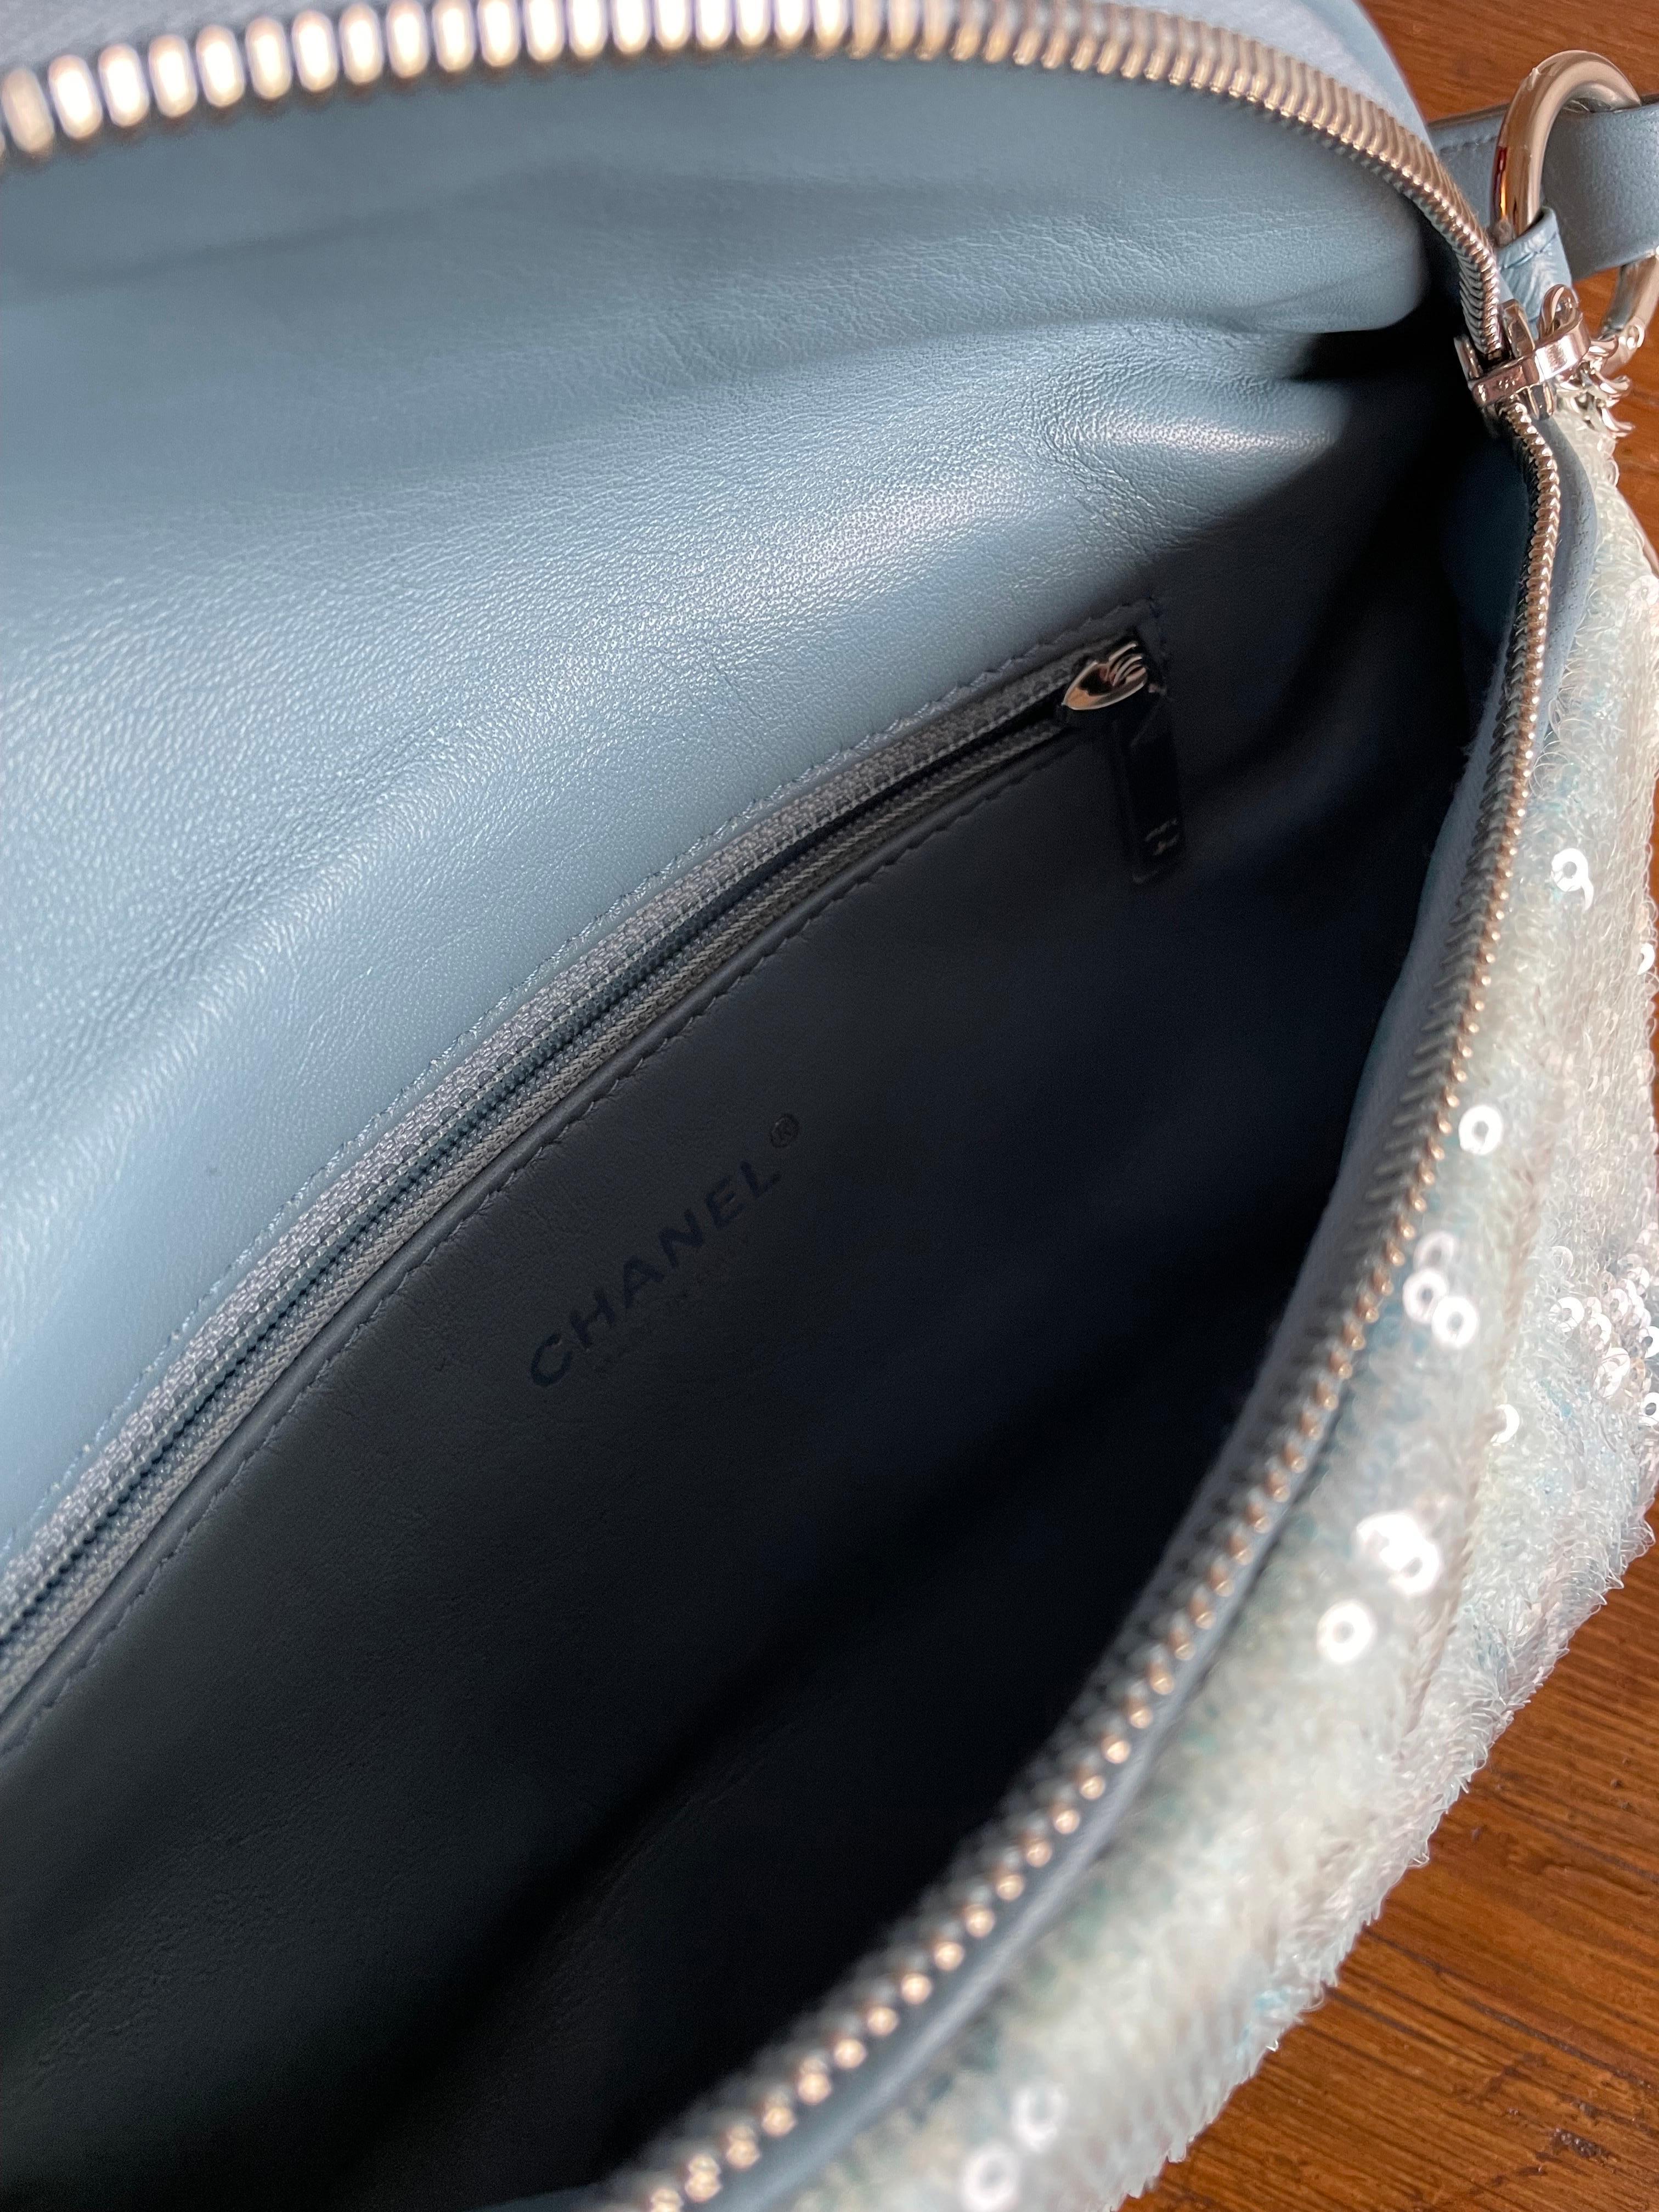 Chanel belt bag with sequins. 3